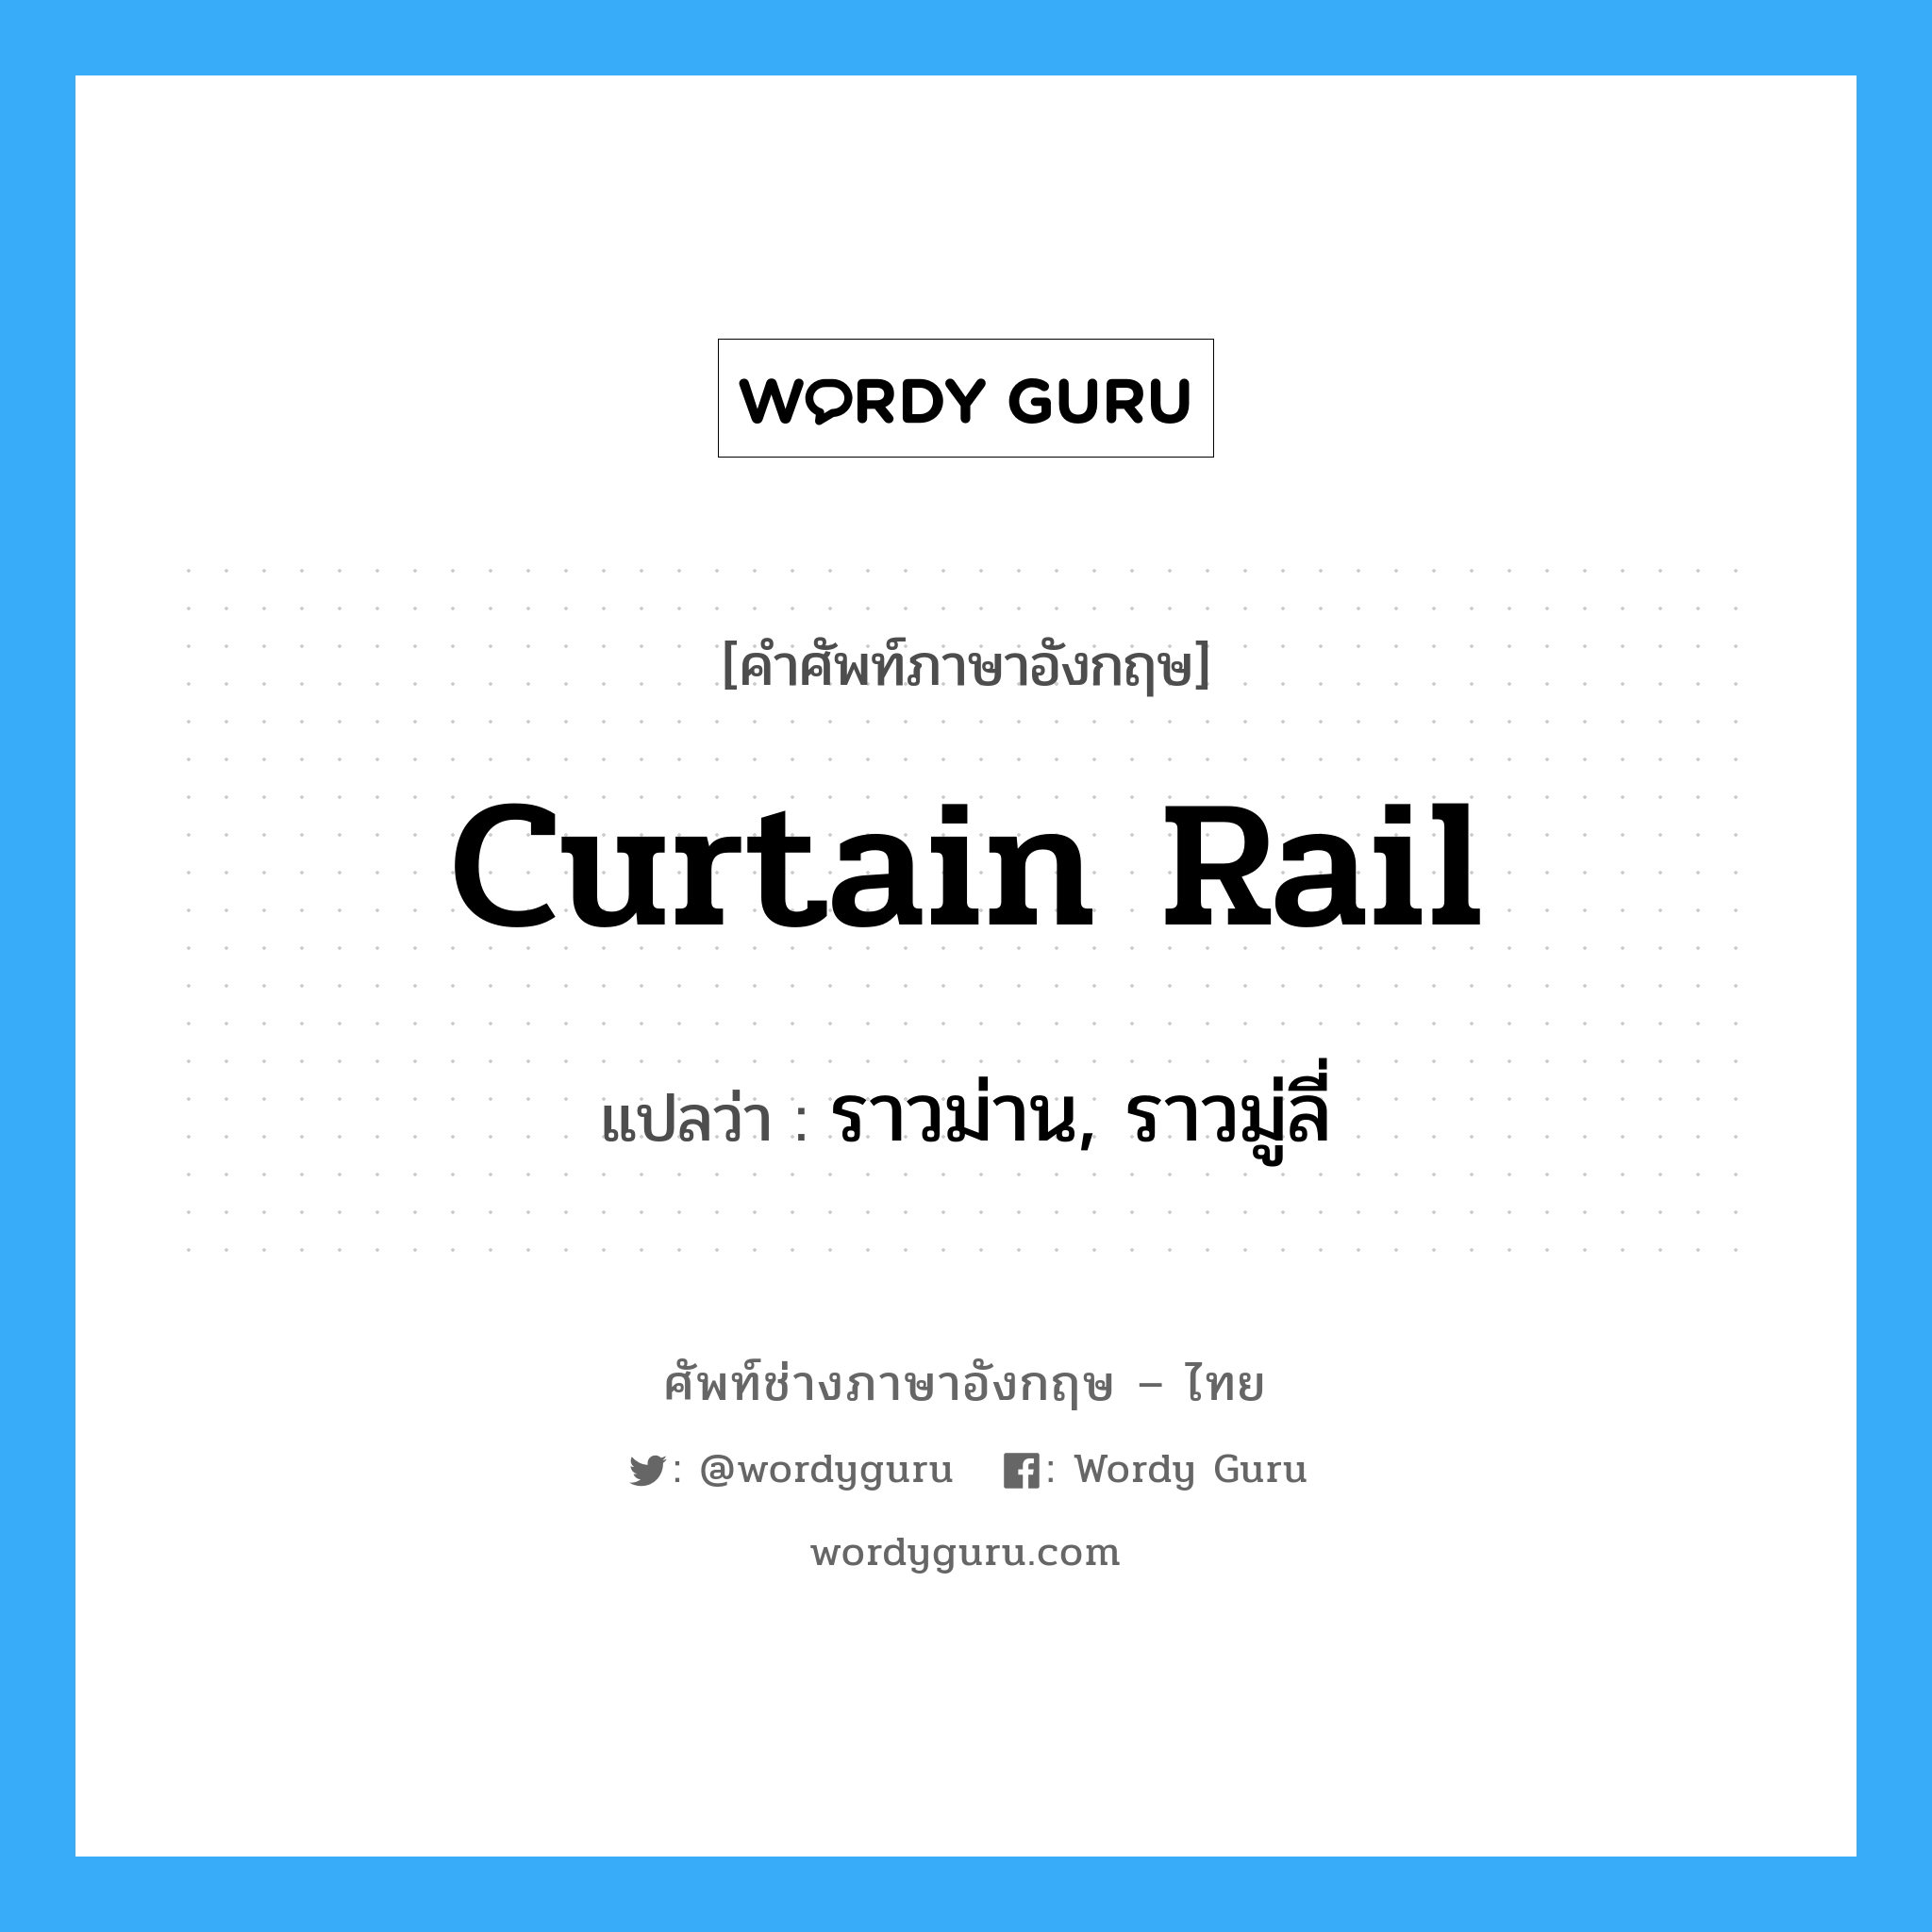 curtain rail แปลว่า?, คำศัพท์ช่างภาษาอังกฤษ - ไทย curtain rail คำศัพท์ภาษาอังกฤษ curtain rail แปลว่า ราวม่าน, ราวมู่ลี่